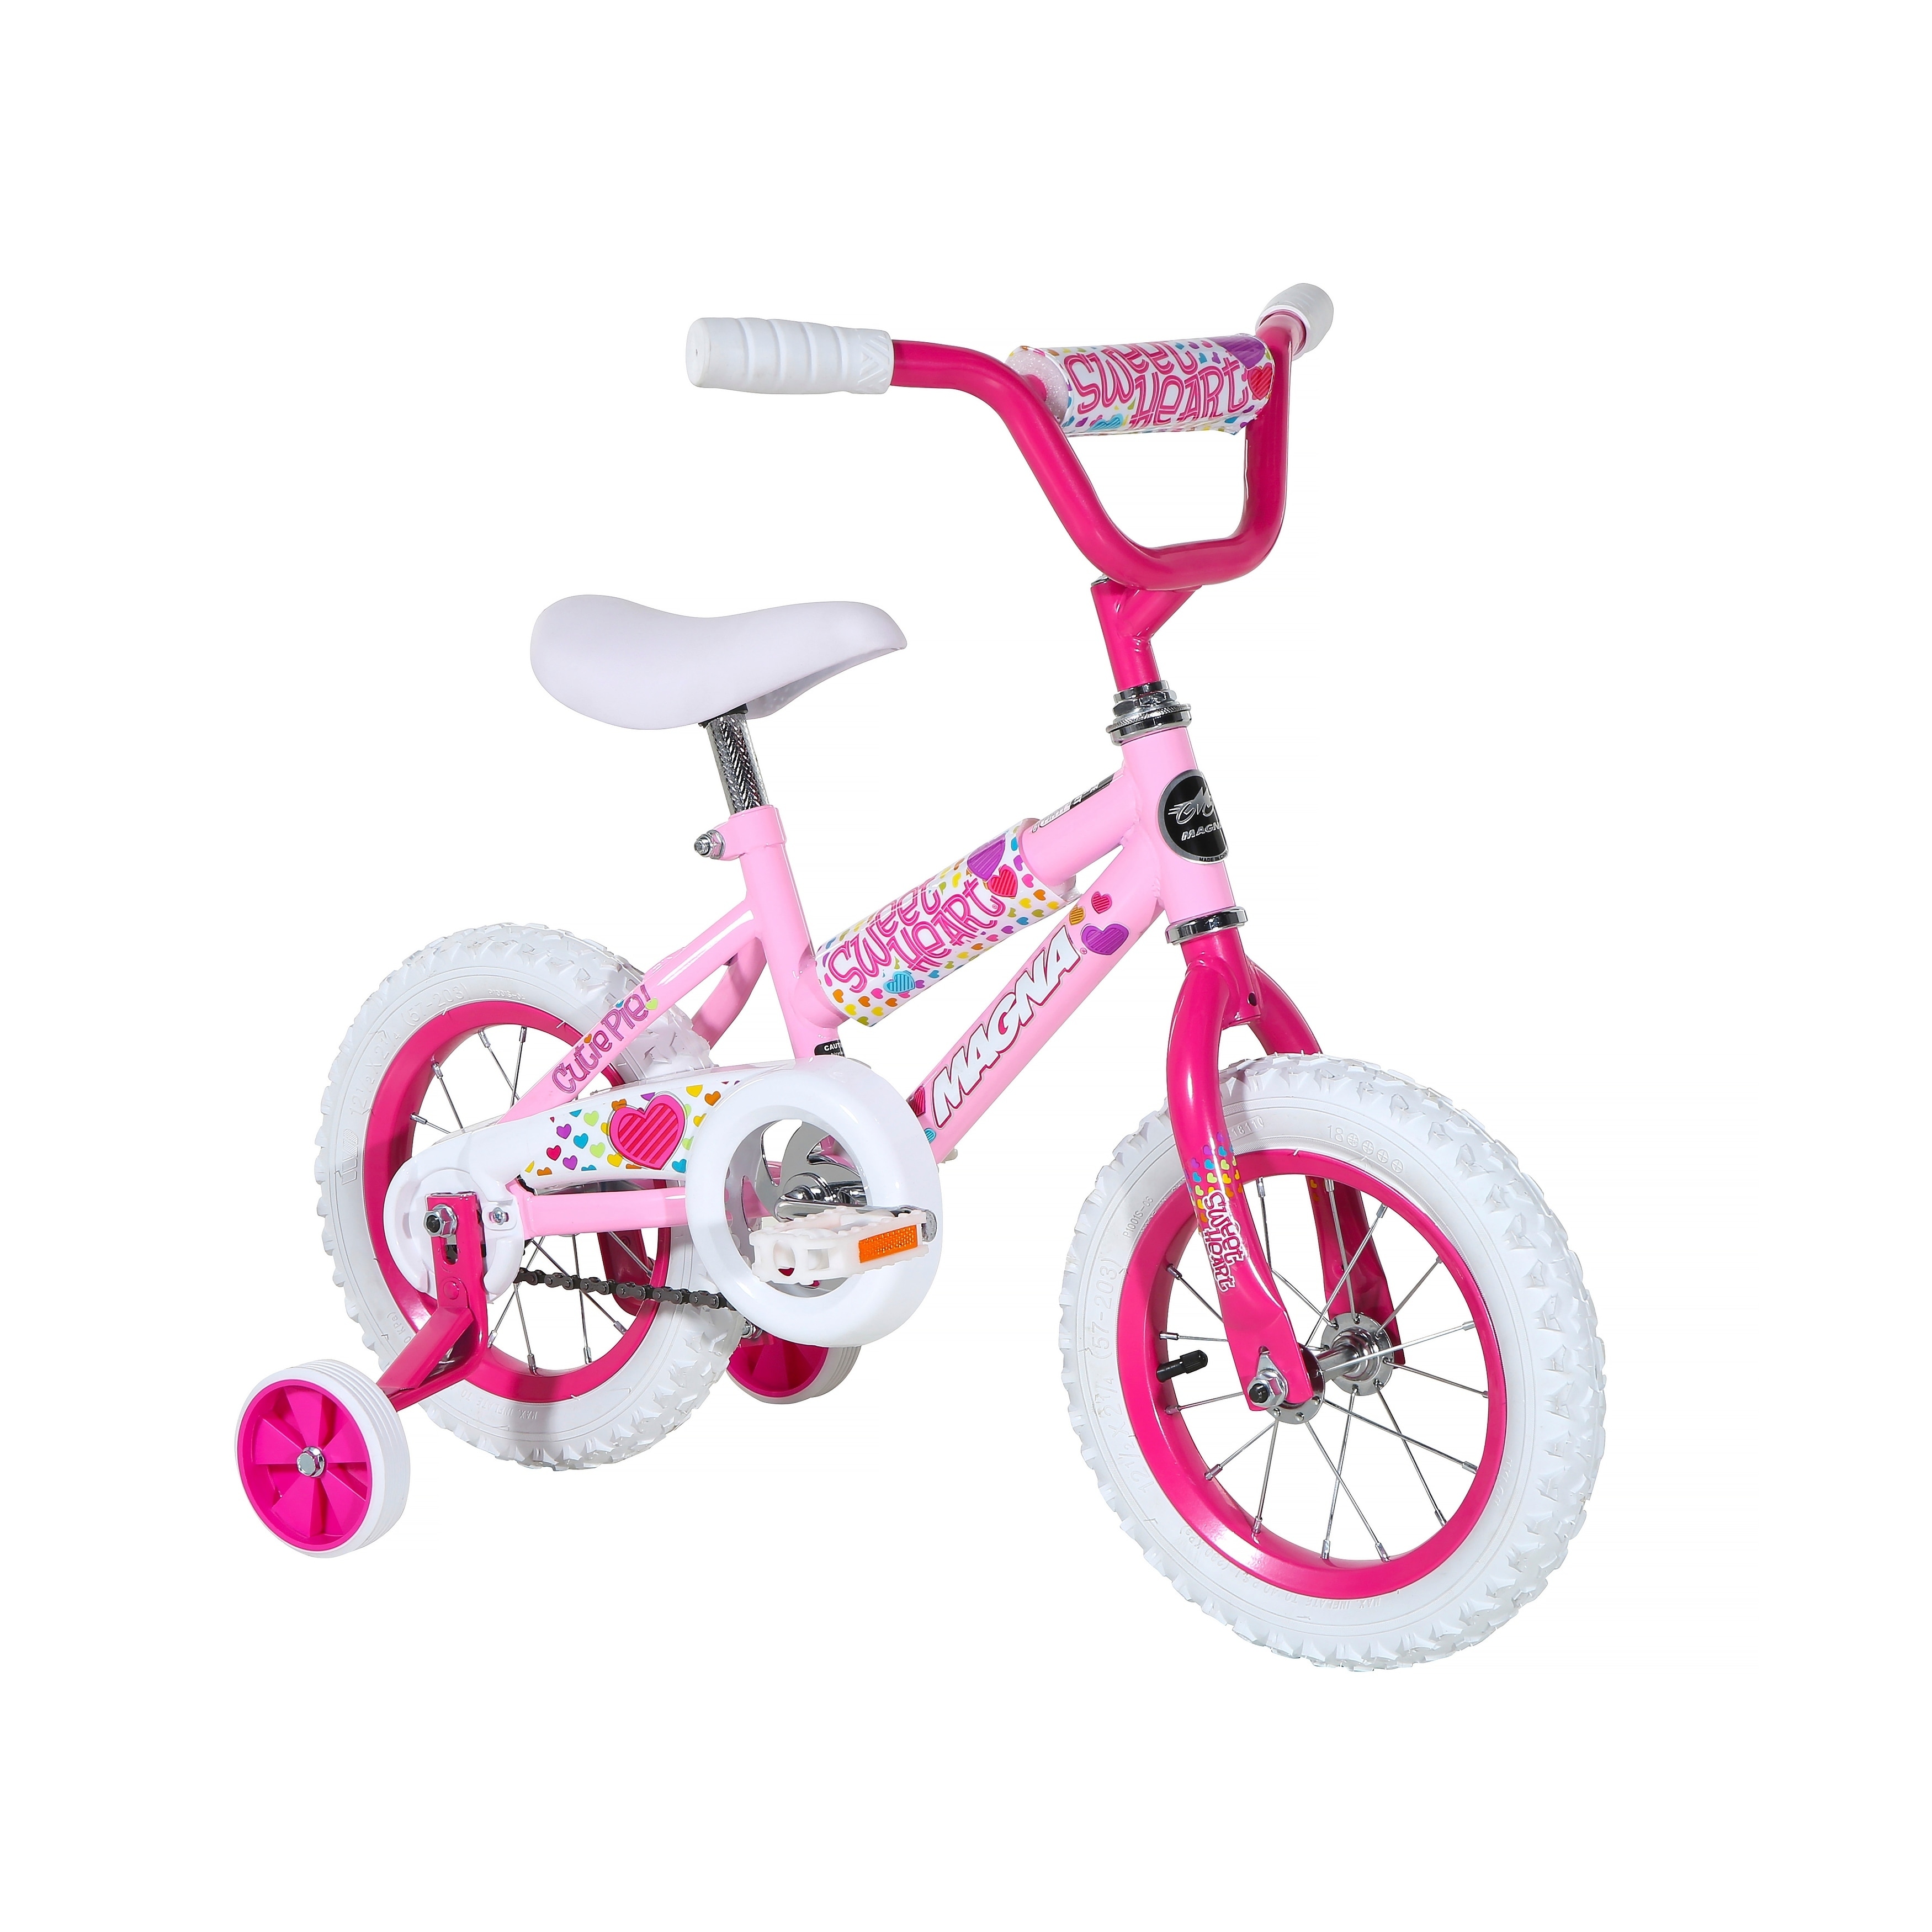 Magna Starburst 16 Bike for Ages 4-8 Pink